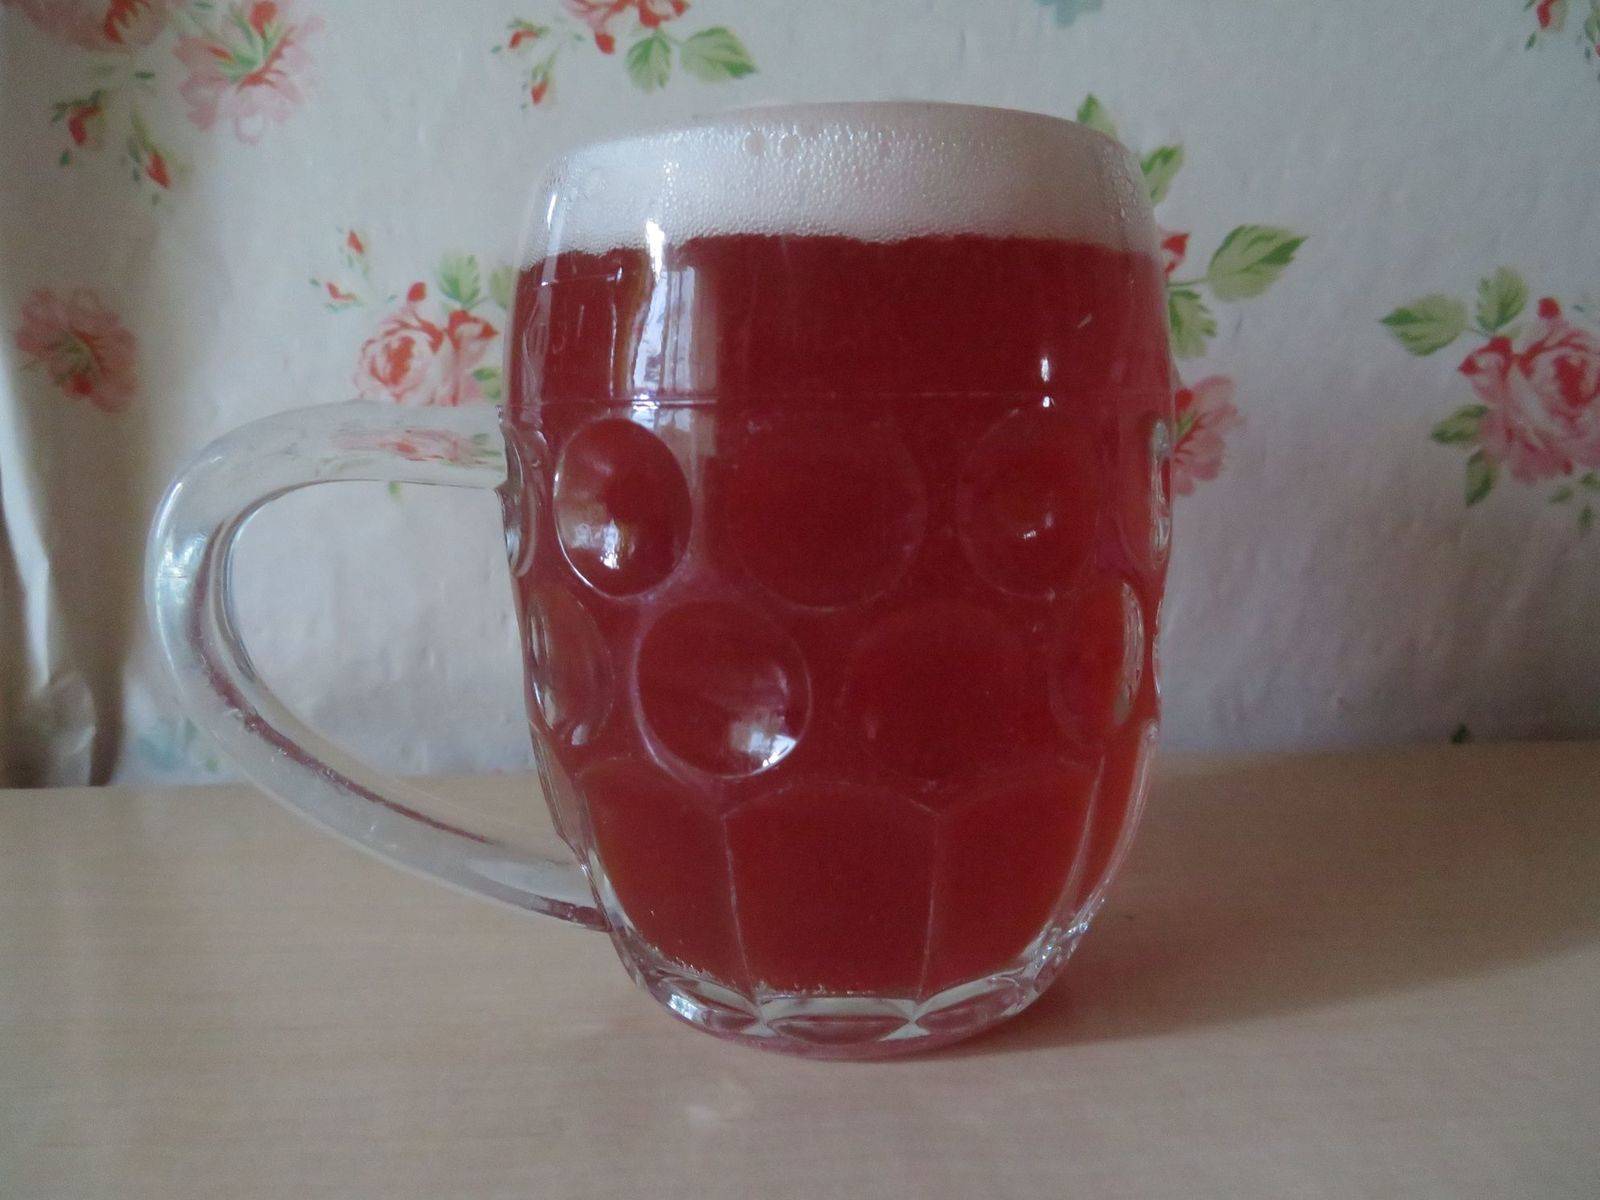 Himbeer-Einhorn-Bier